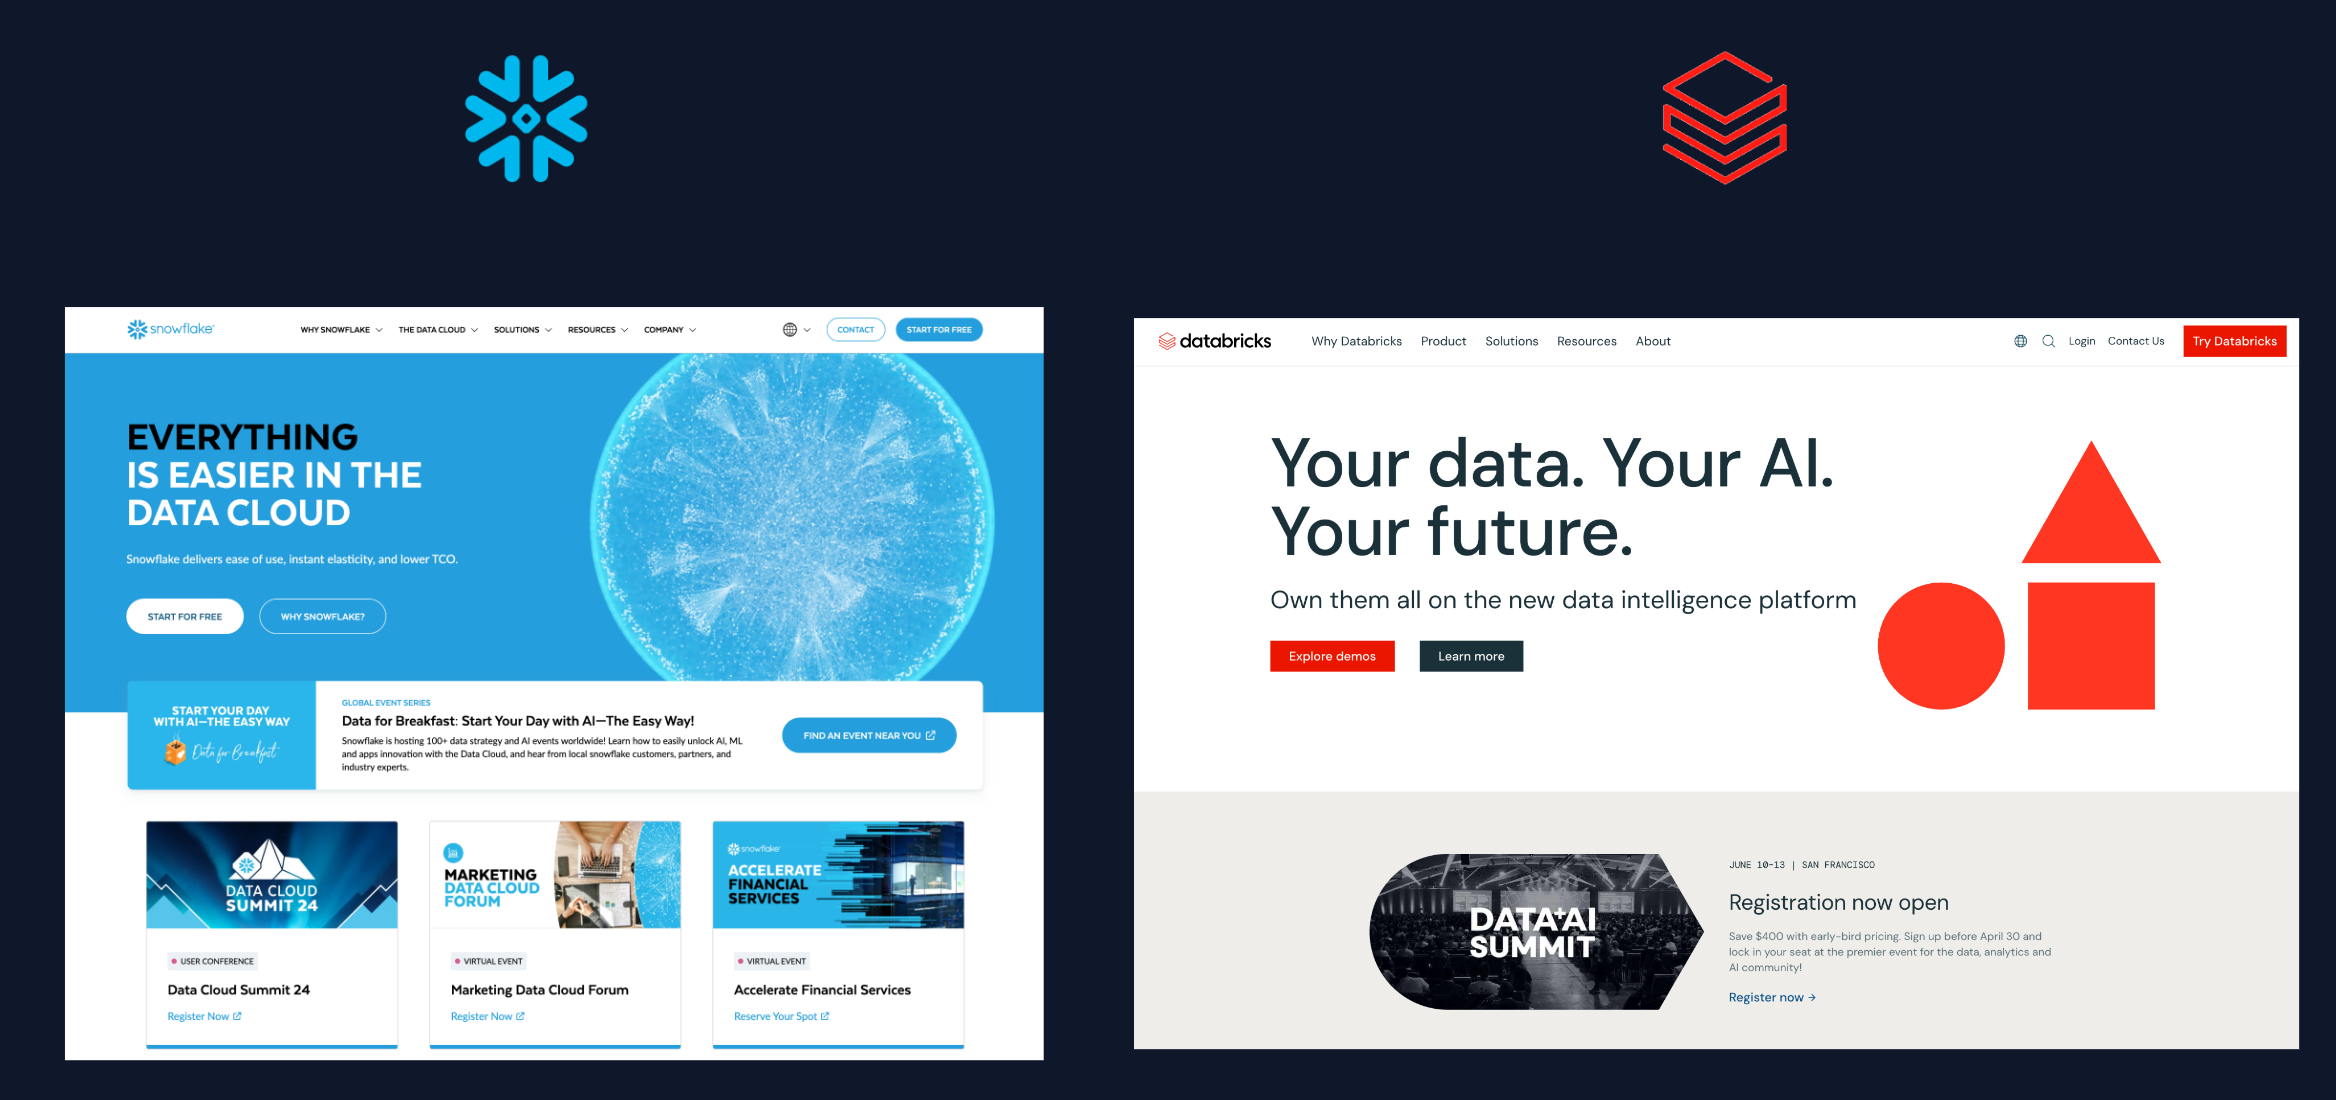 Snowflake vs. Databricks website branding